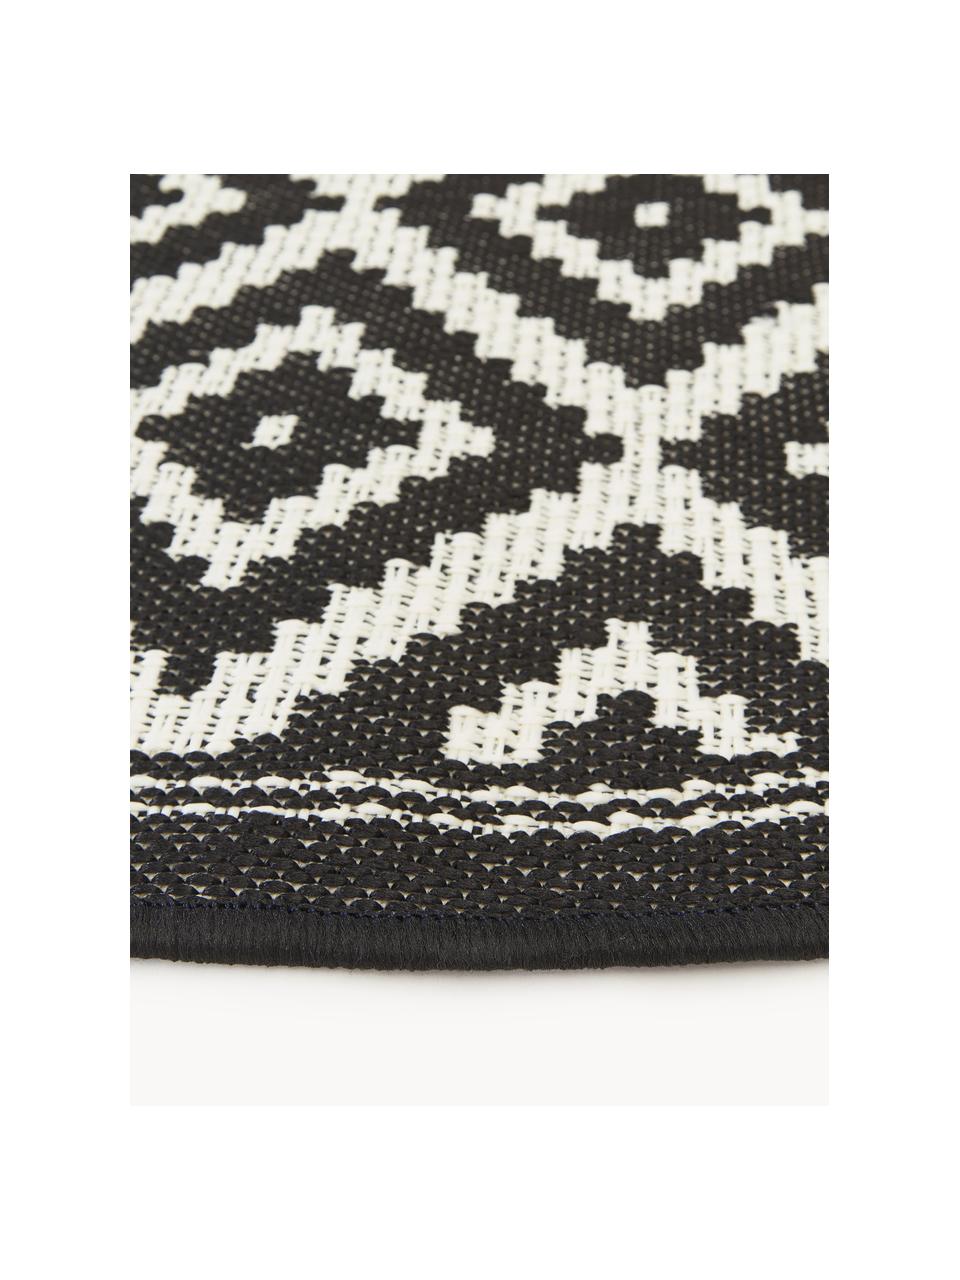 Kulatý interiérový/exteriérový koberec Miami, 70 % polypropylen, 30 % polyester, Černá, bílá, Ø 200 cm (velikost L)